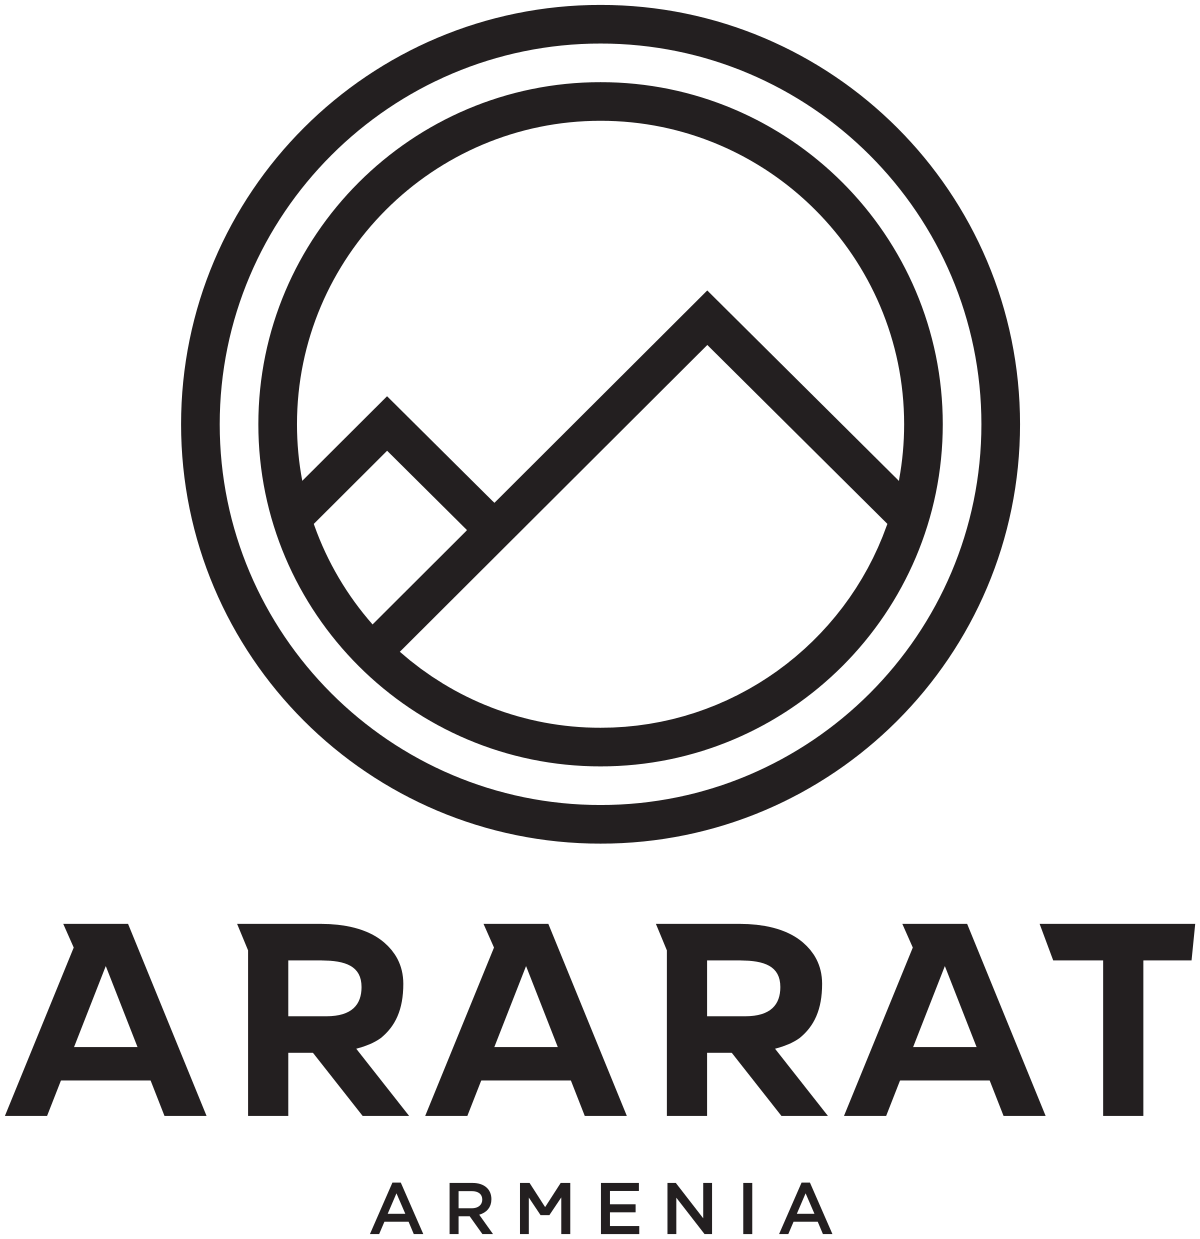 Nữ Ararat Armenia